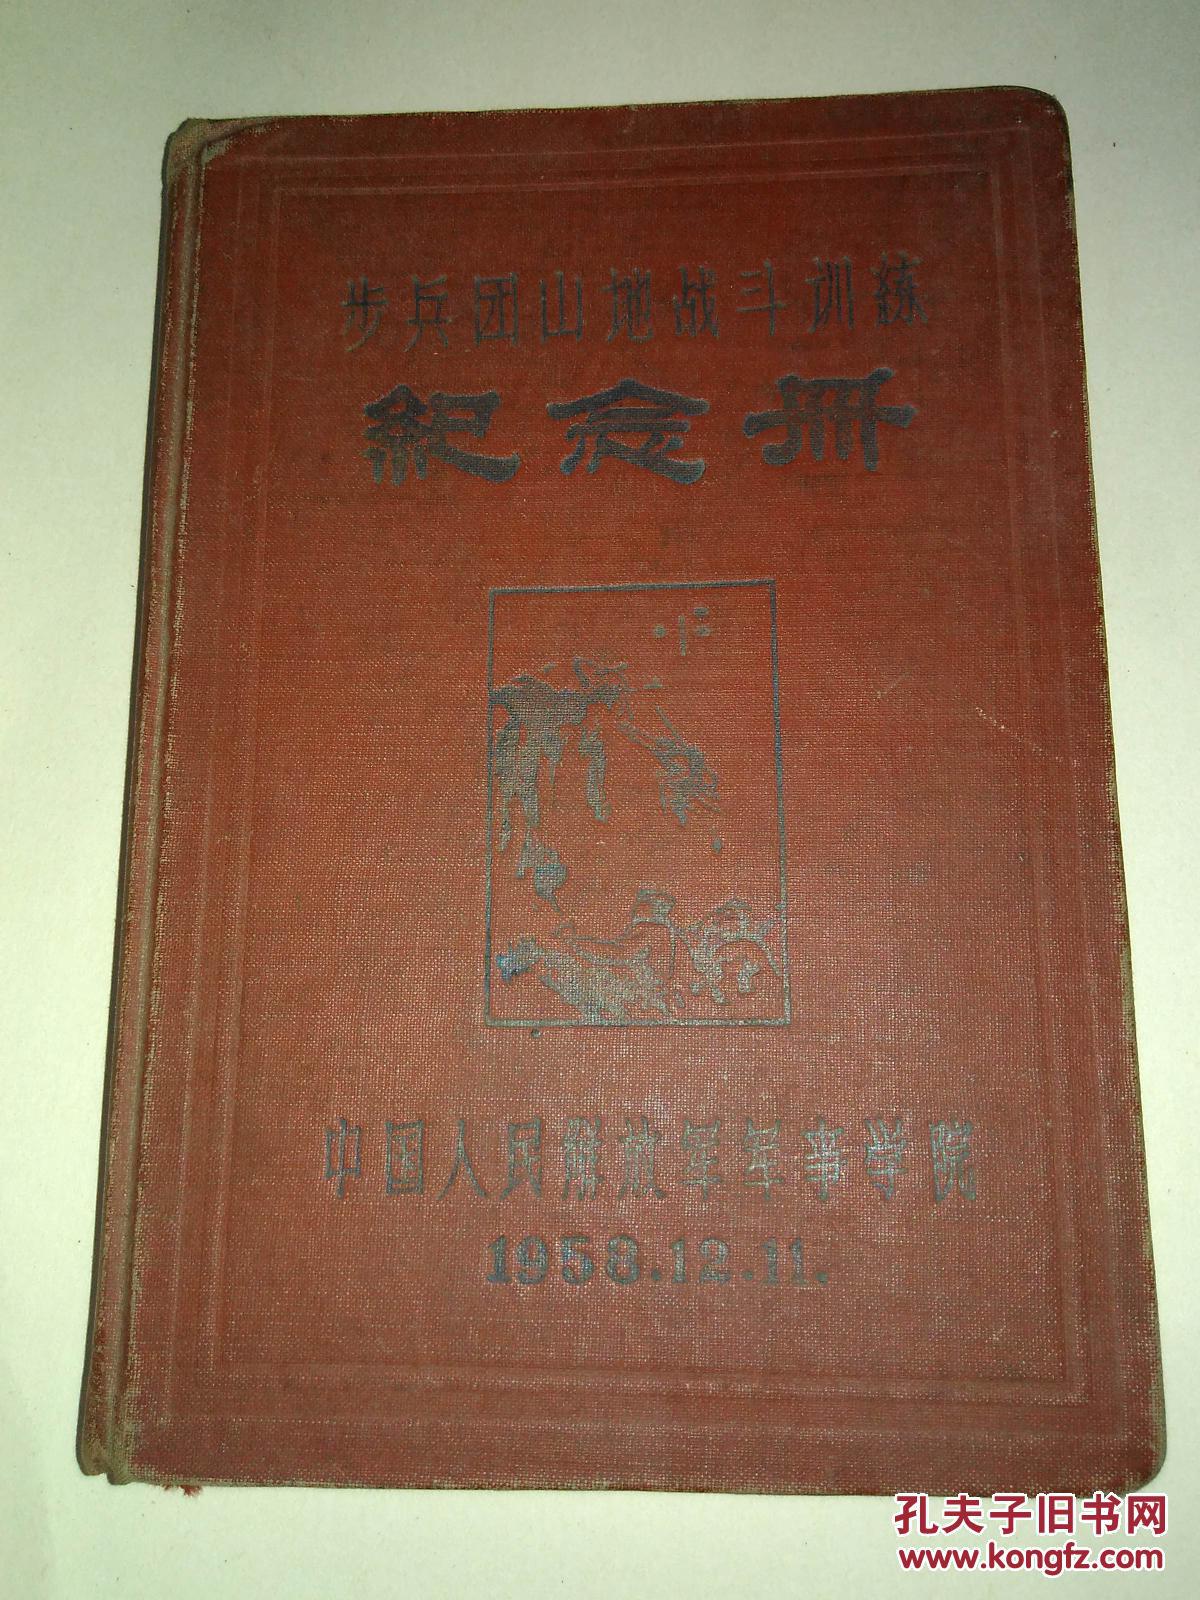 【图】1958年步兵团山地战斗训练纪念册_中国